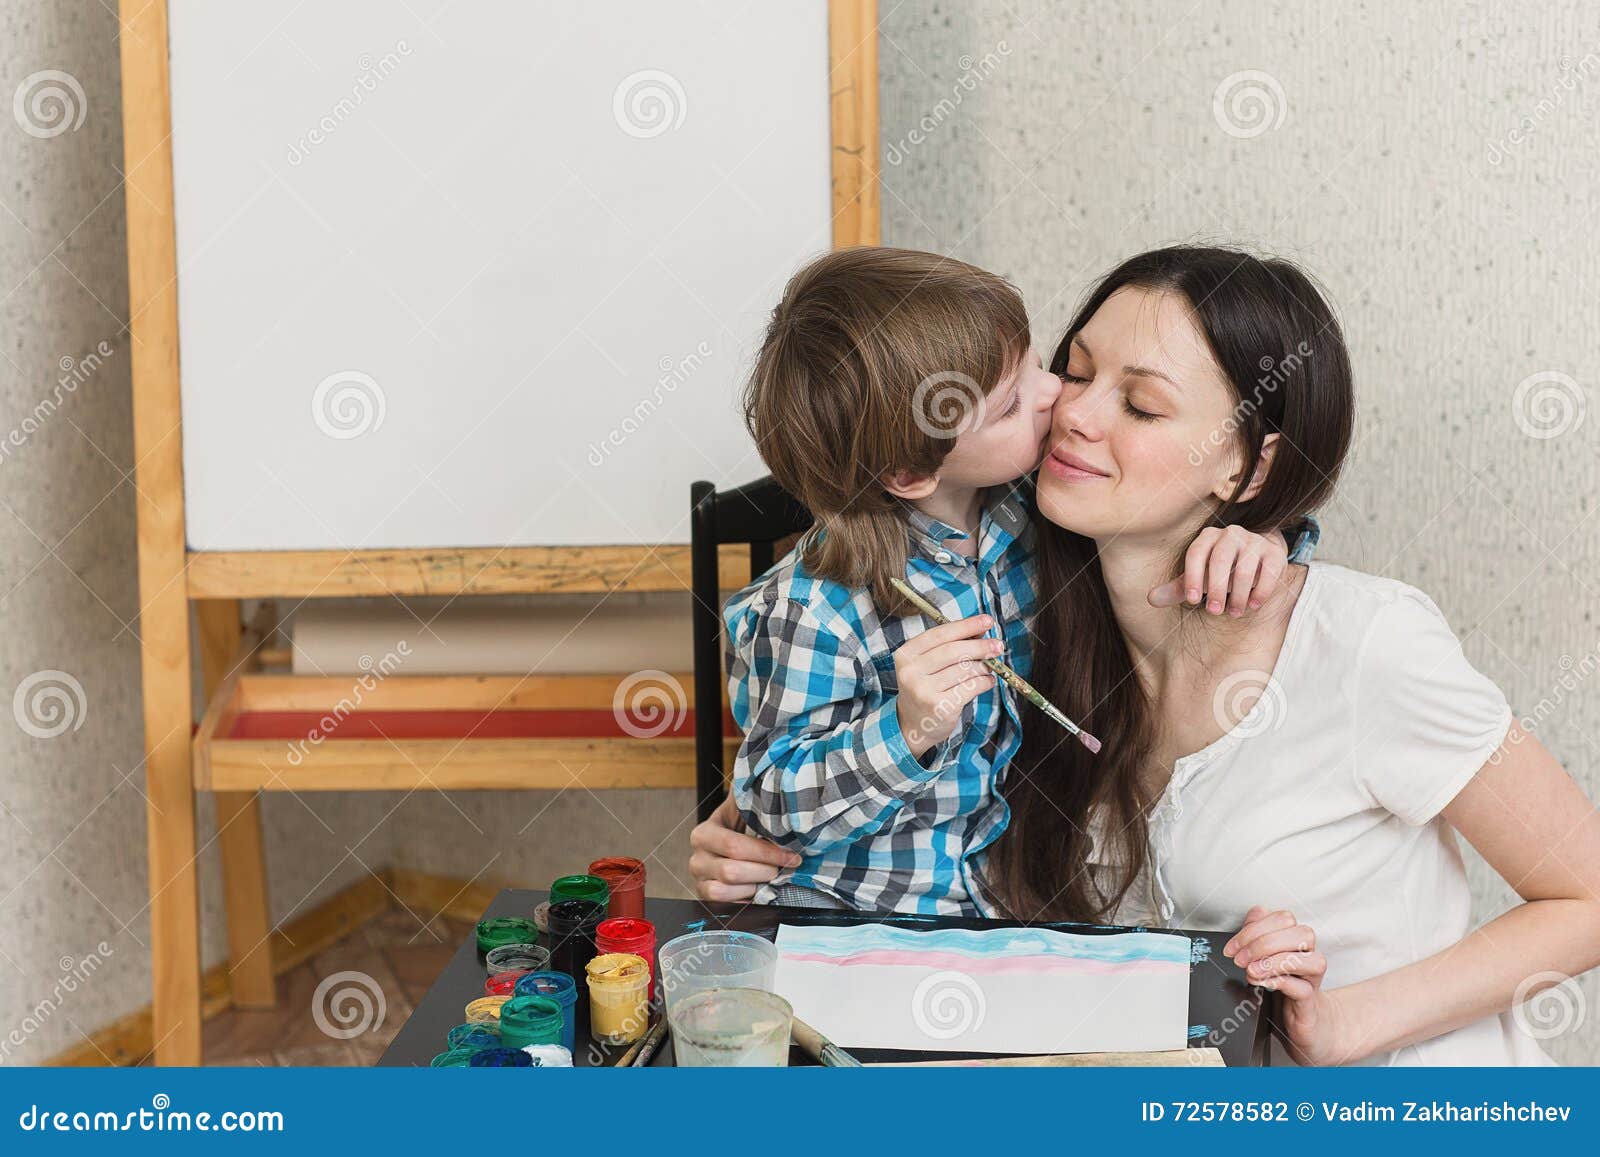 Русская молодая мама учит. Мама поучает сына. Мама научила сына. Красивая мама учит сына. Мать научила сына и дочь.